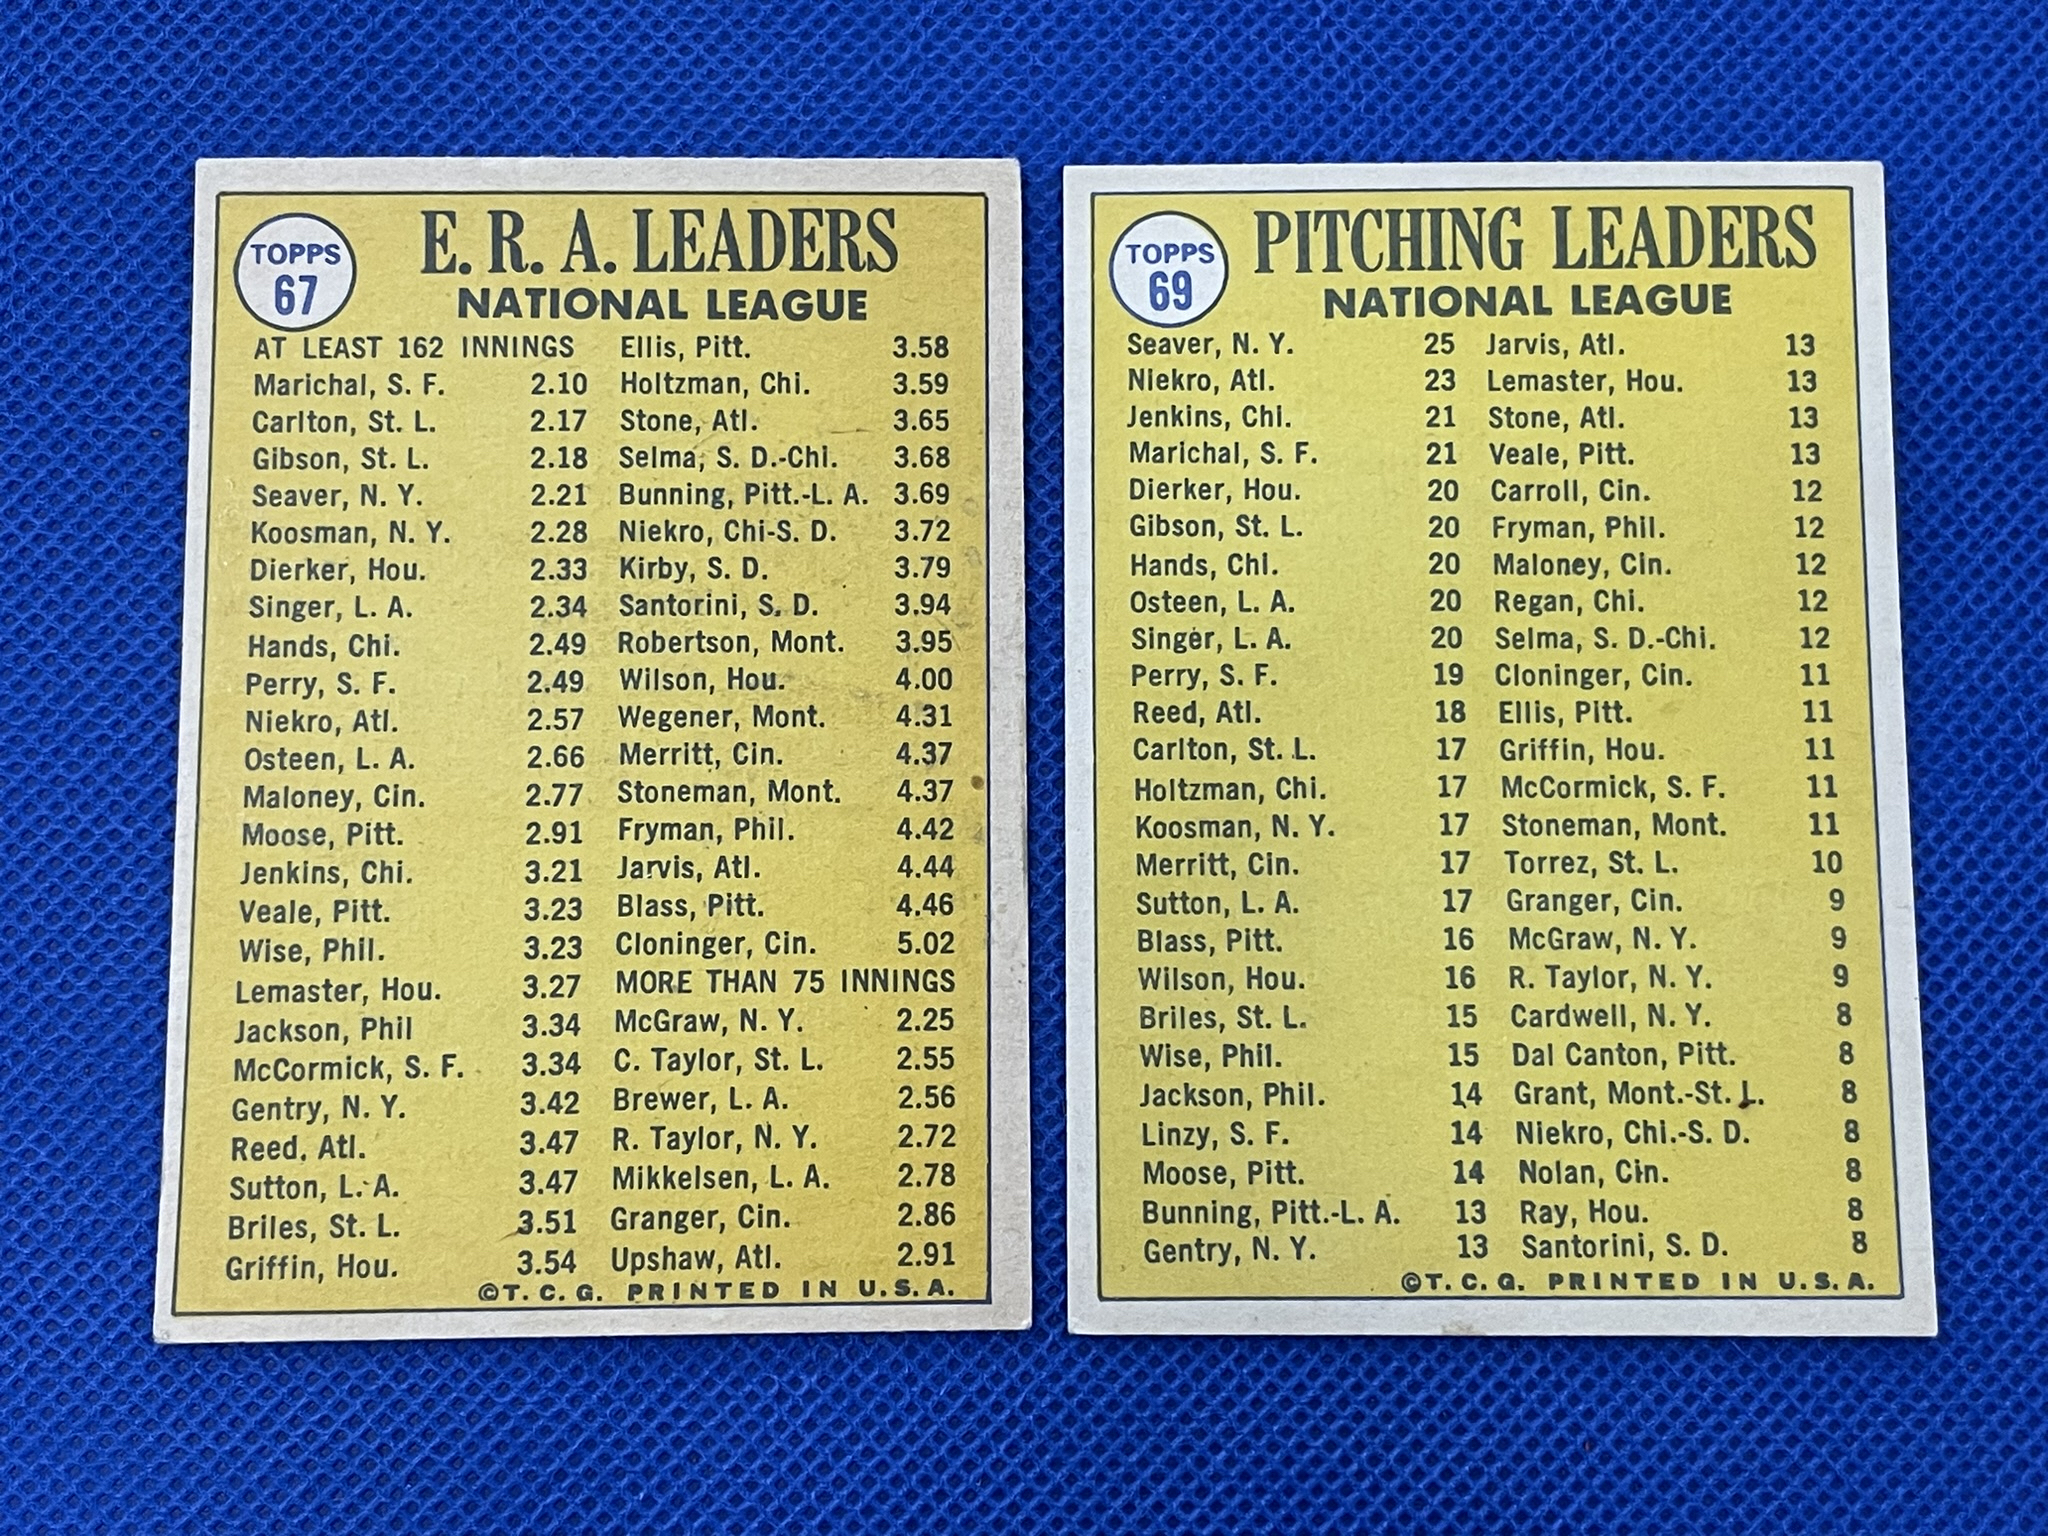 1970 Topps baseball cards Tom Seaver, Bob Gibson